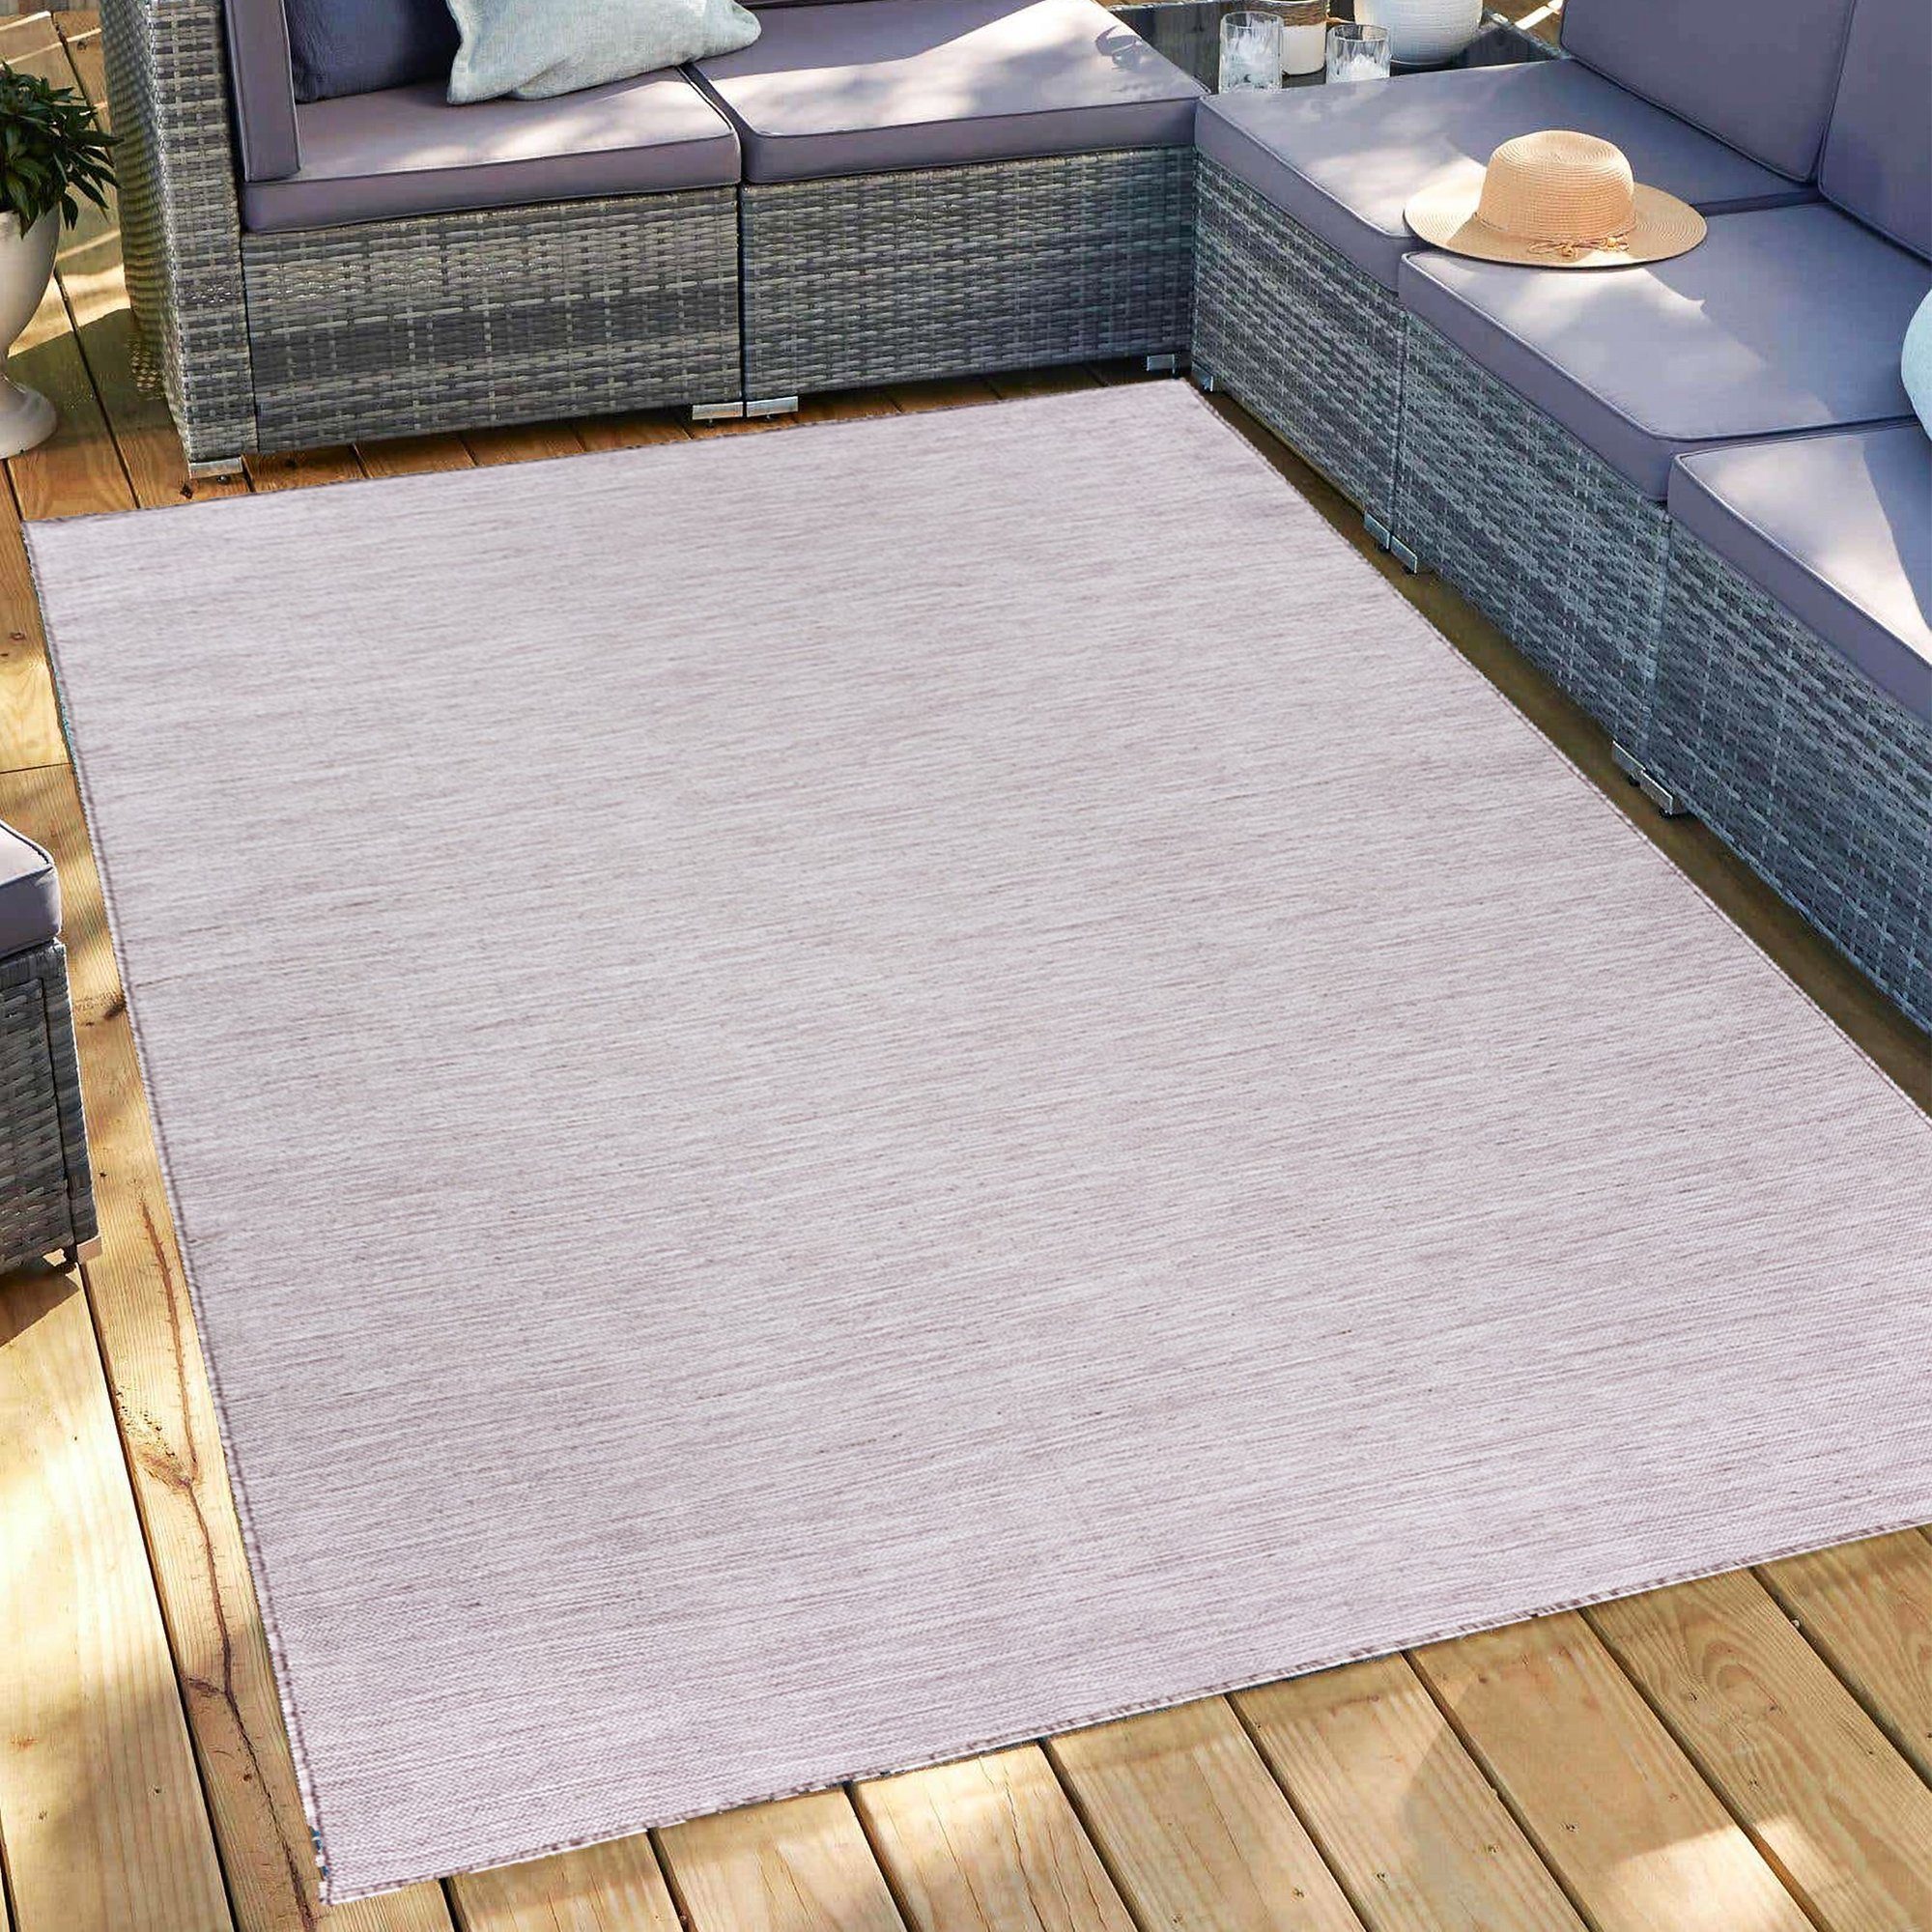 Outdoorteppich Gartenteppich Sisal-Look Teppich Indoor Outdoorteppich, Miovani Pink